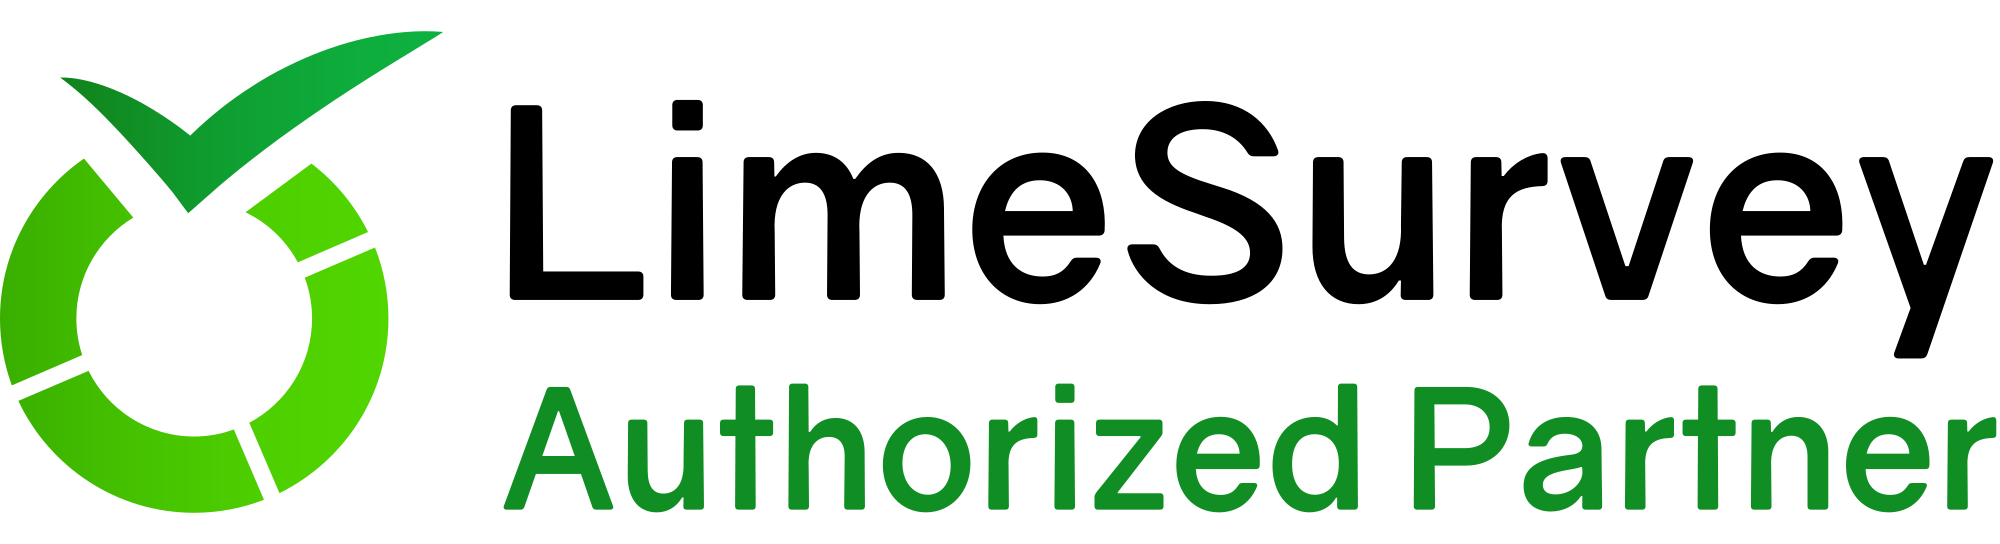 Limesurvey Authorised Partner Logo